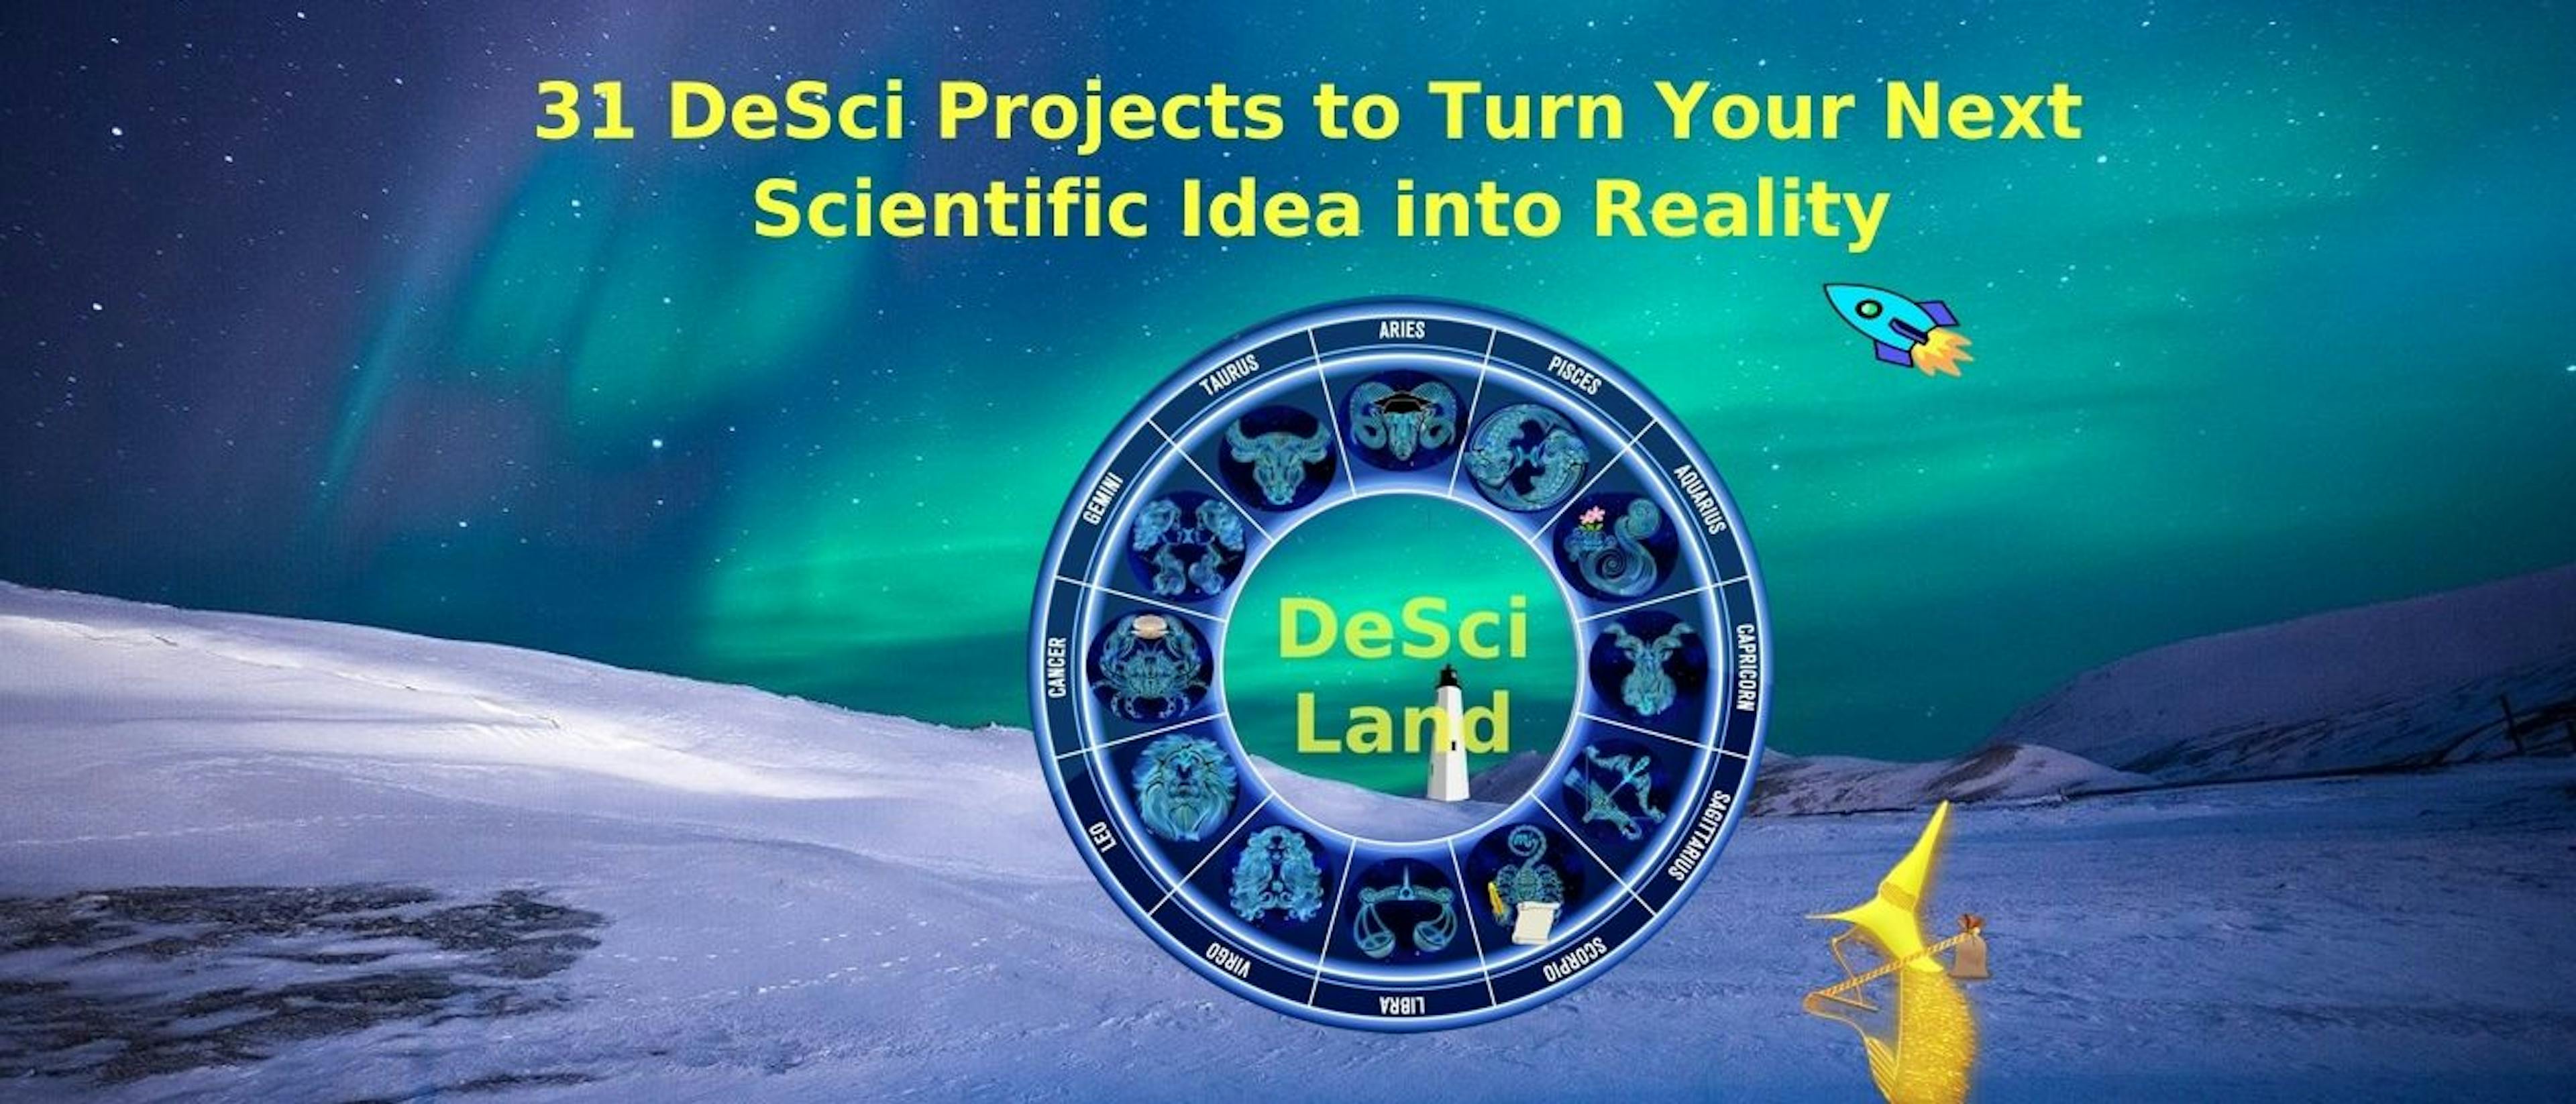 featured image - 31 projetos DeSci para transformar sua próxima ideia científica em realidade